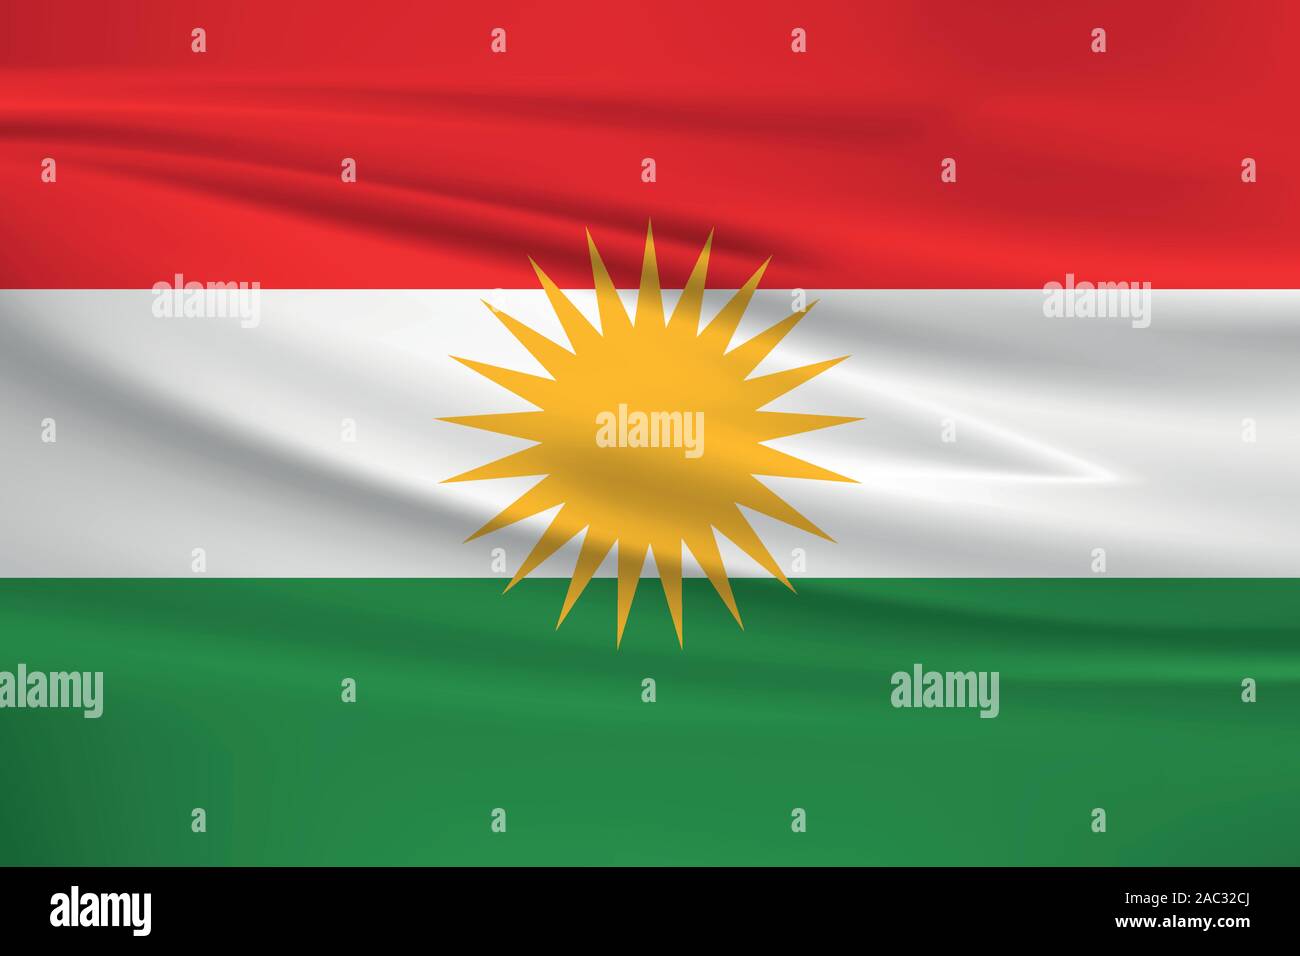 Brandissant le drapeau du Kurdistan, couleurs officielles et le ratio exact. Drapeau national du Kurdistan. Vector illustration. Illustration de Vecteur